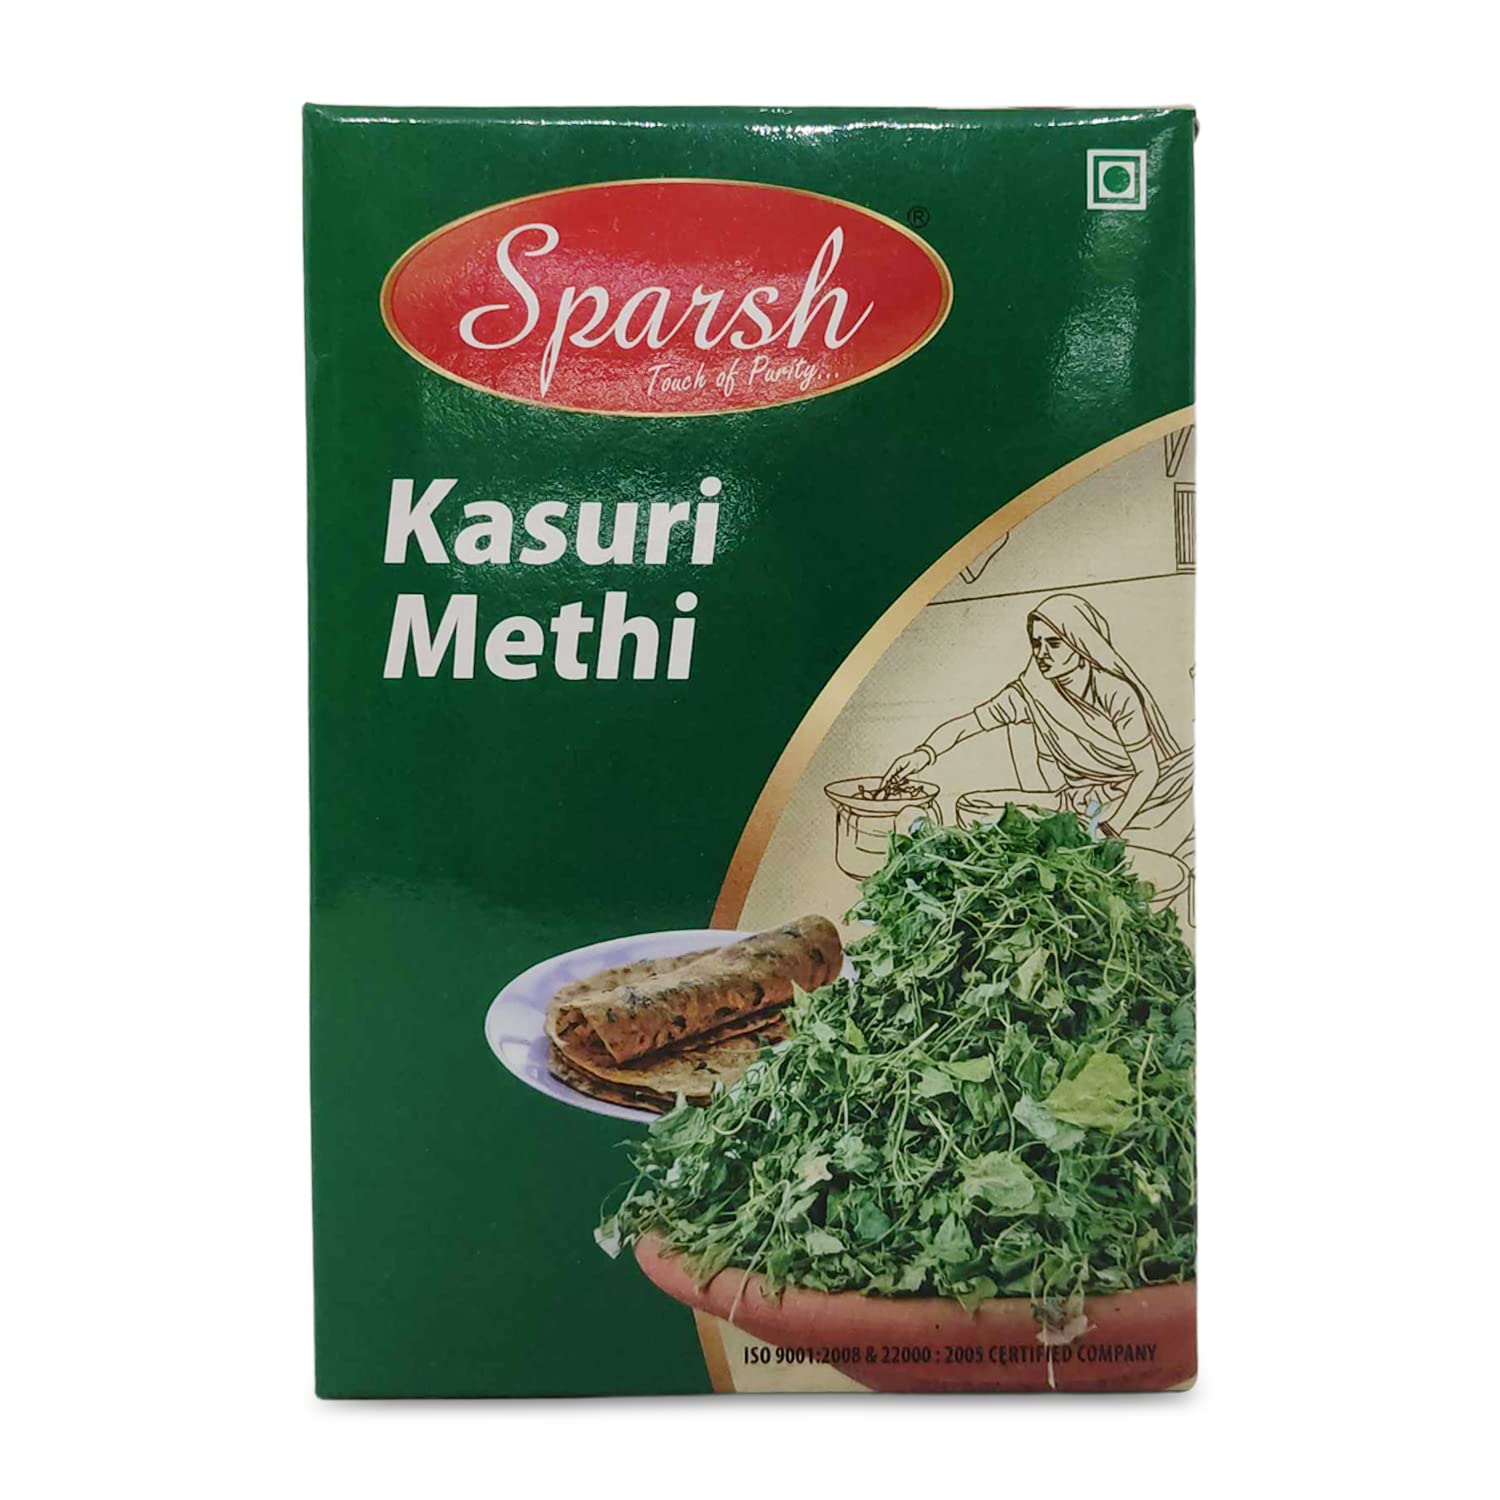 Sparsh Kasuri Methi Powder, 25g Box